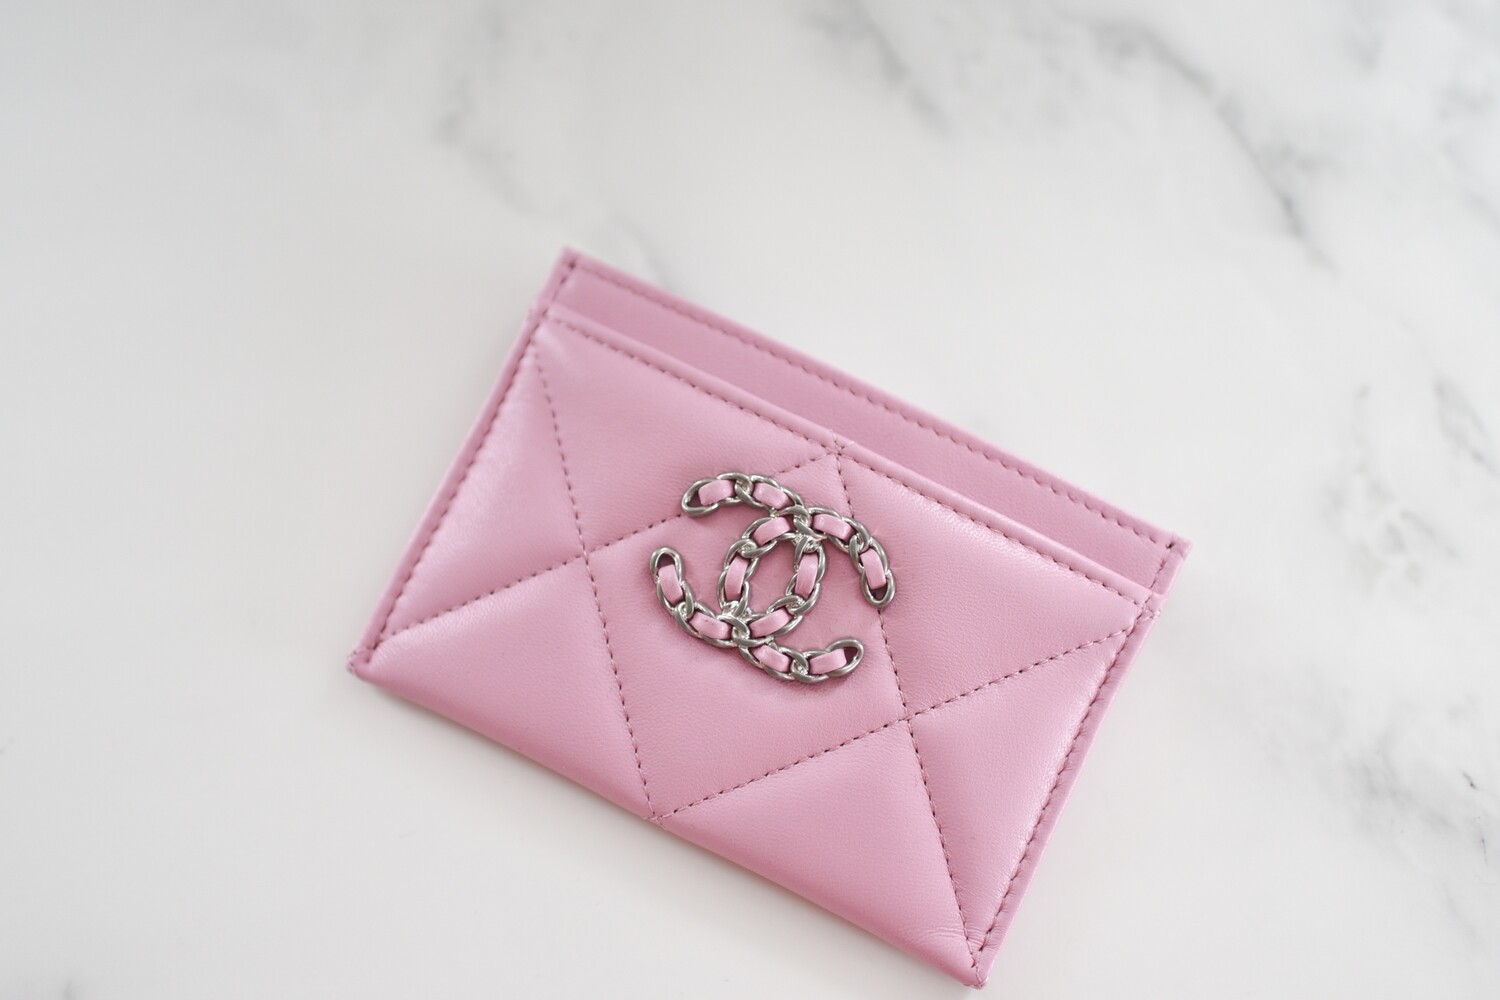 card holder chanel pink wallet